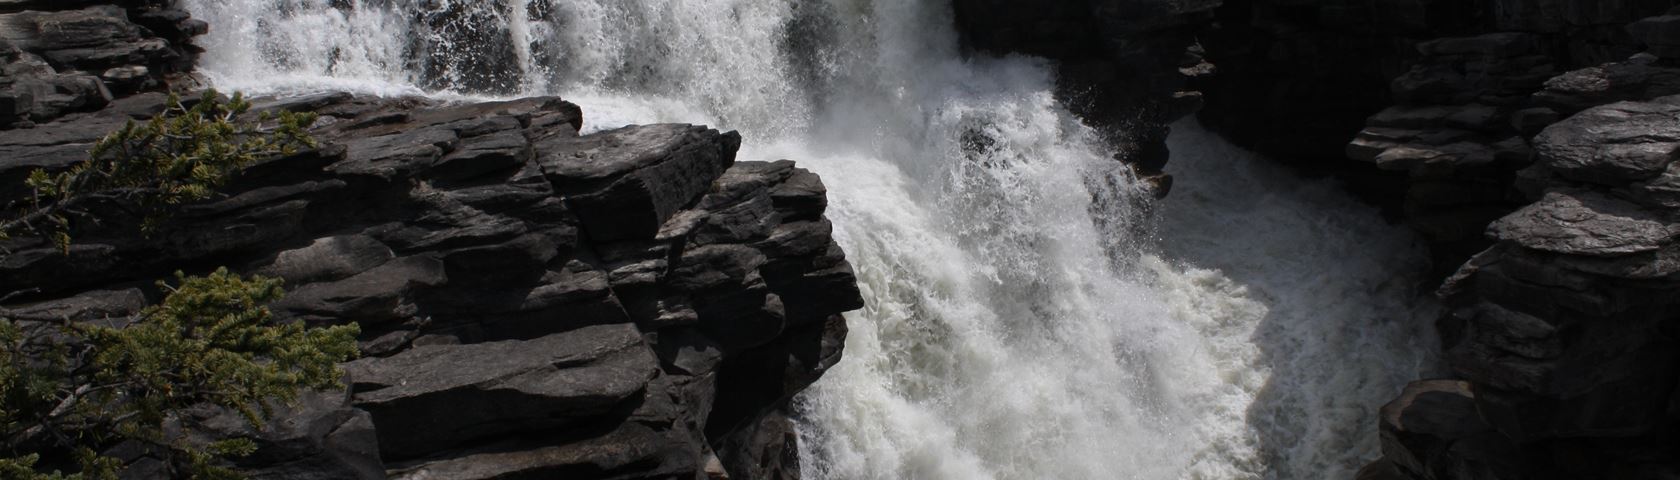 Falls Near Jasper Lower